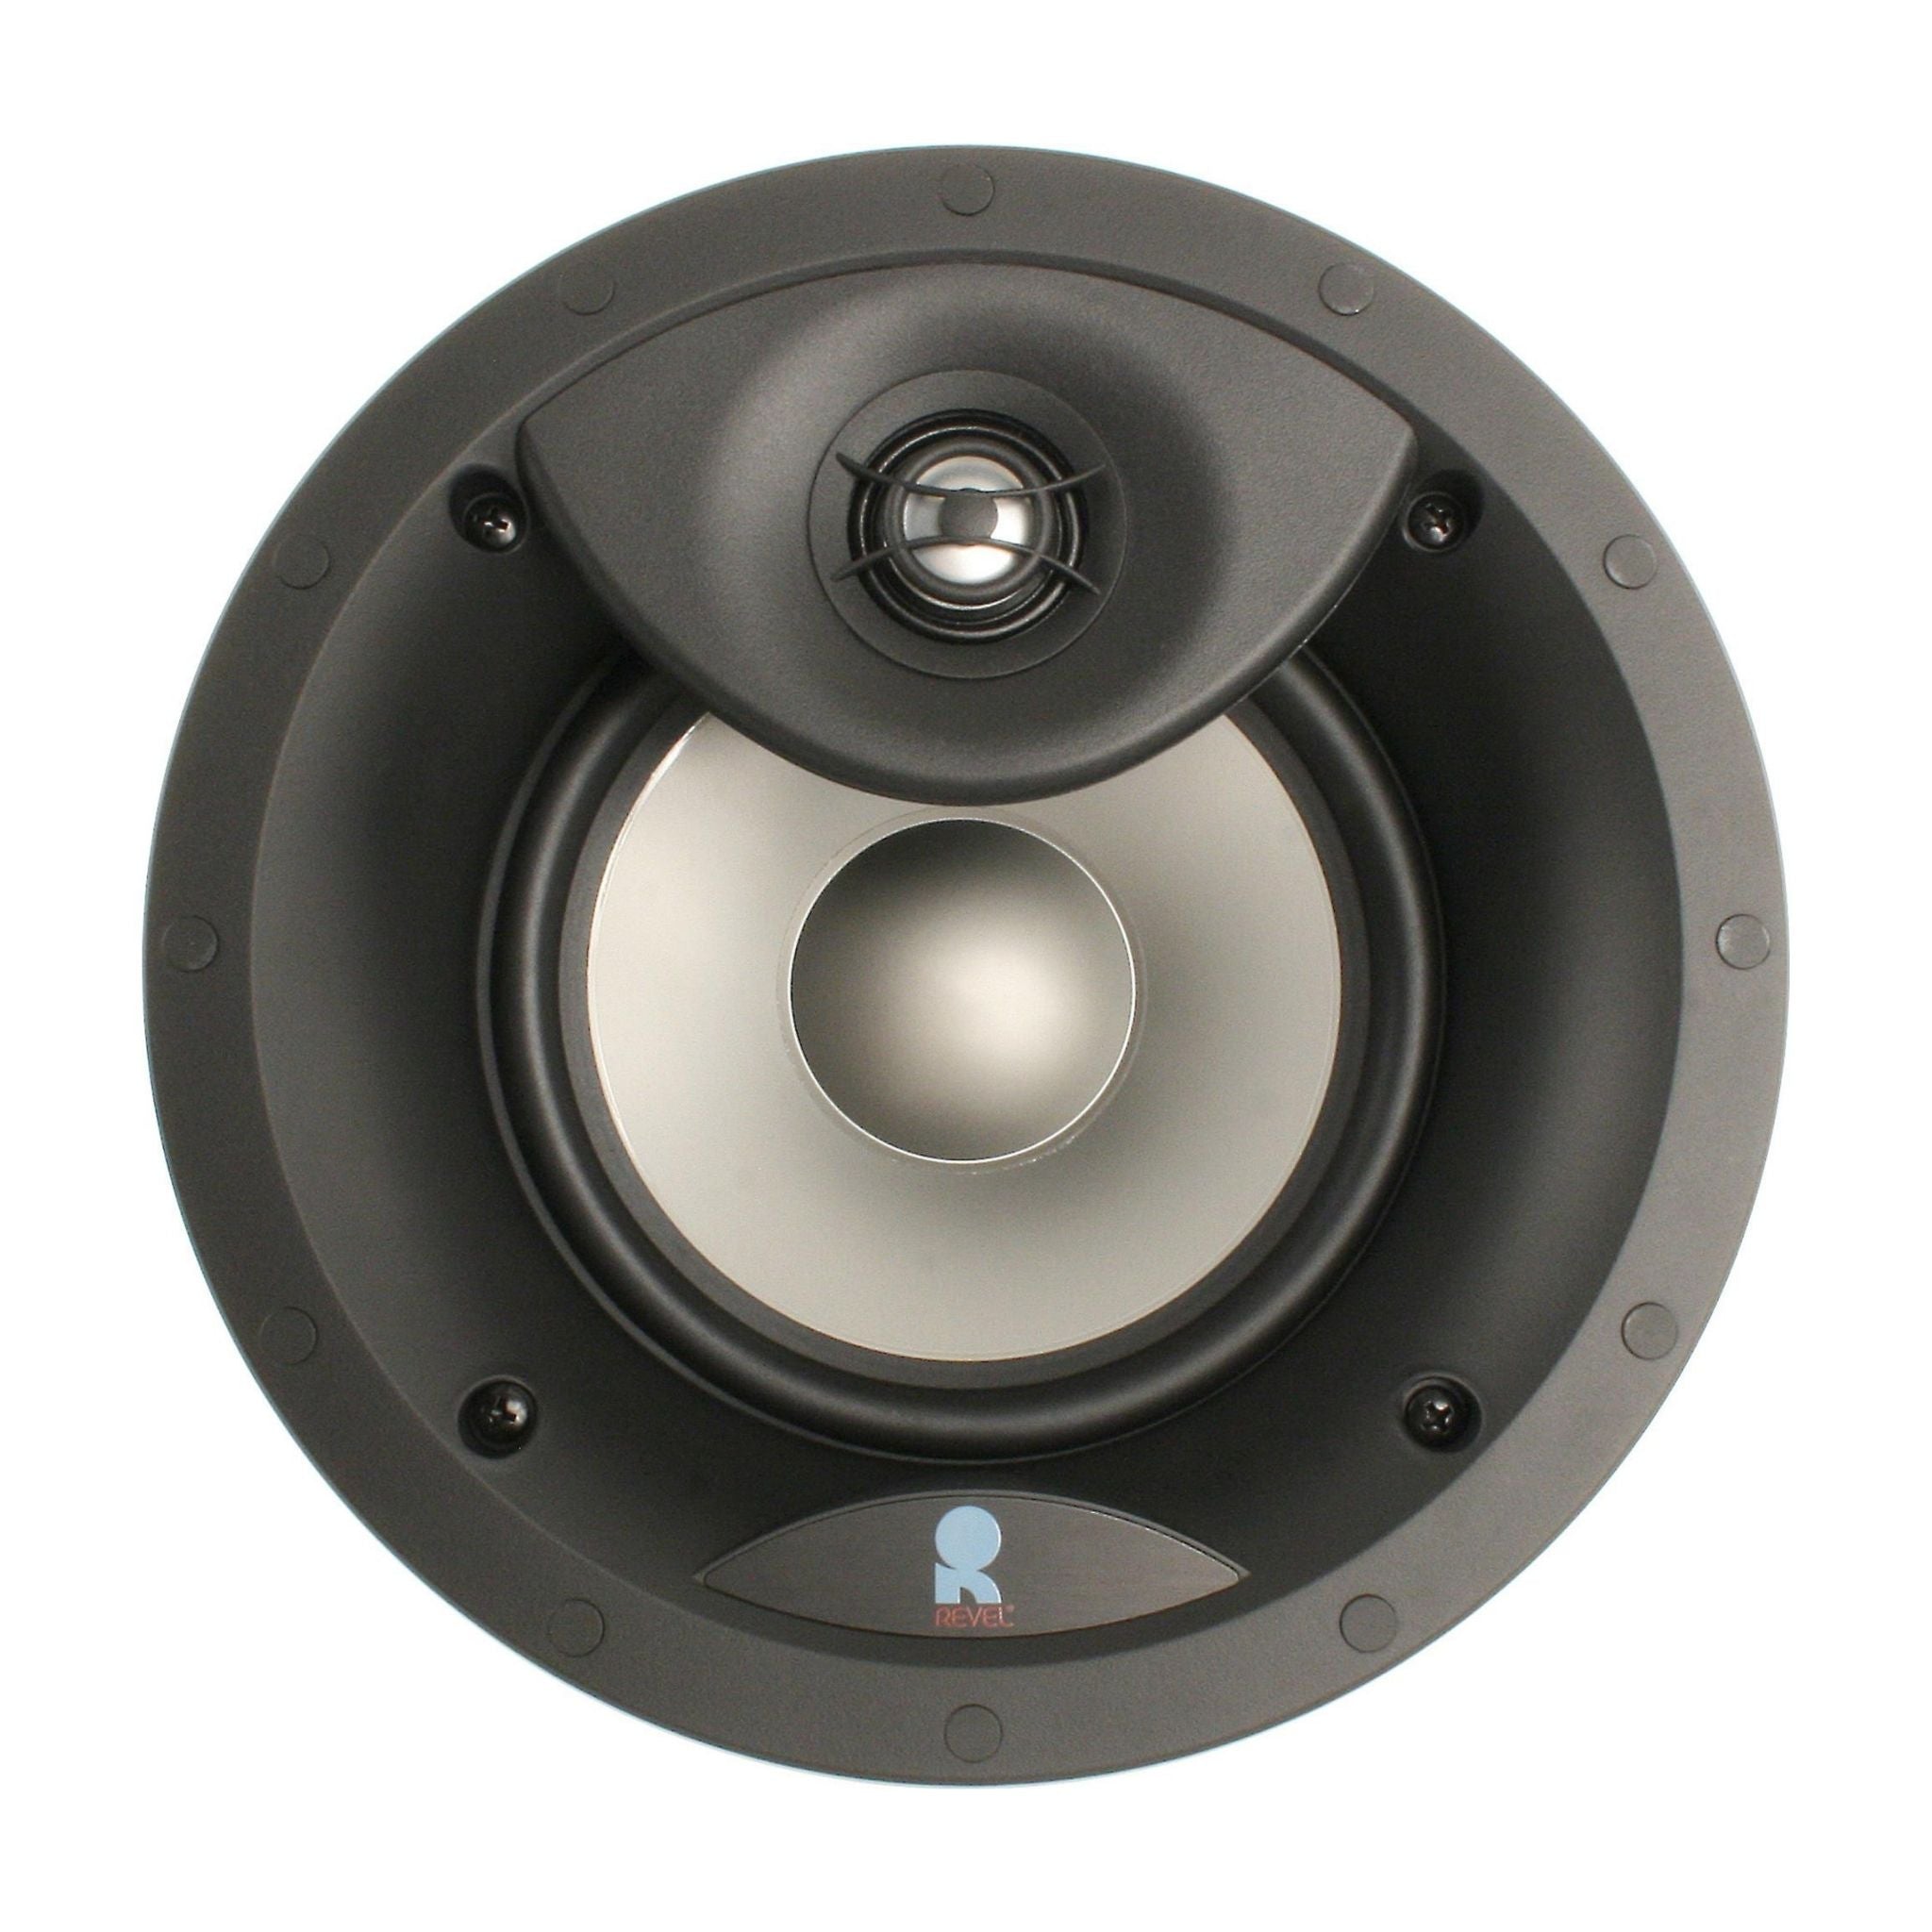 Revel C363 - In-Ceiling Speaker - Piece - AVStore